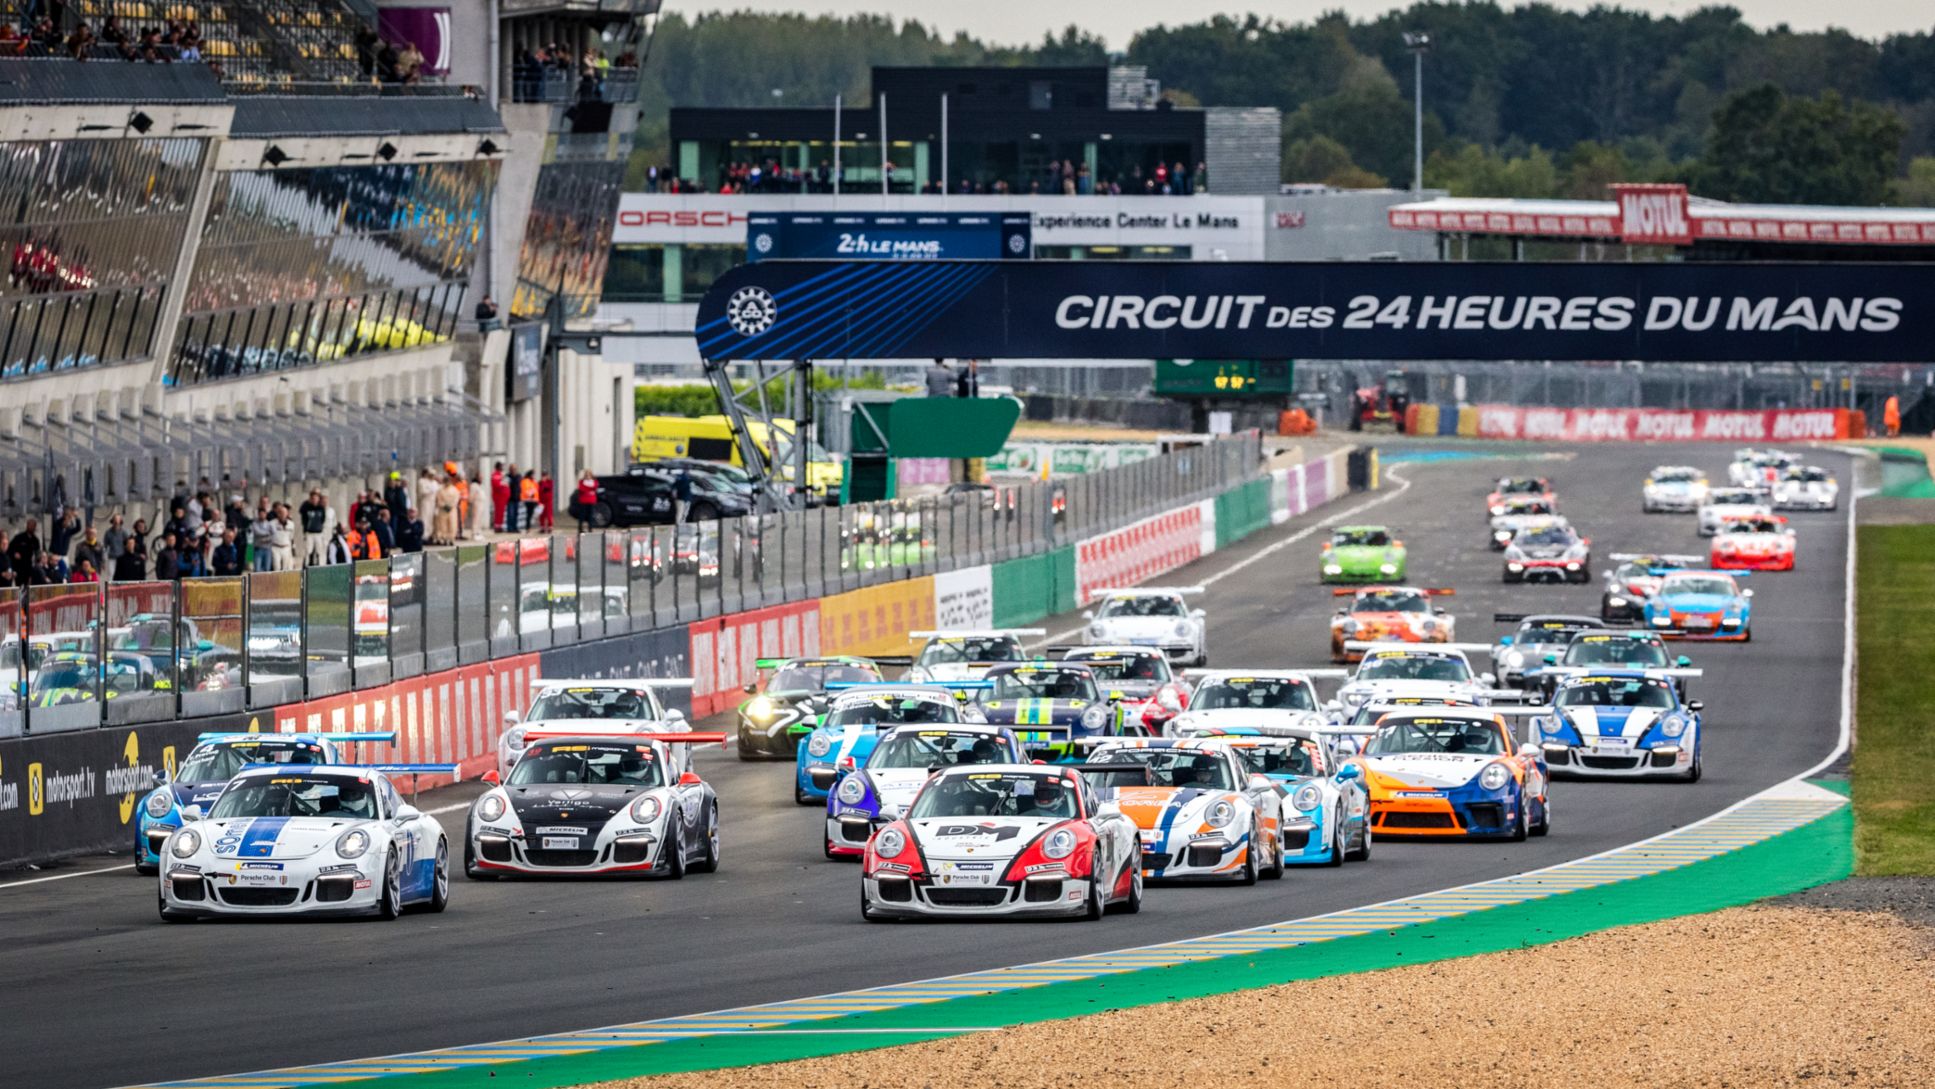 Le nouveau Porsche Sprint Challenge France fera ses débuts dans la saison 2021